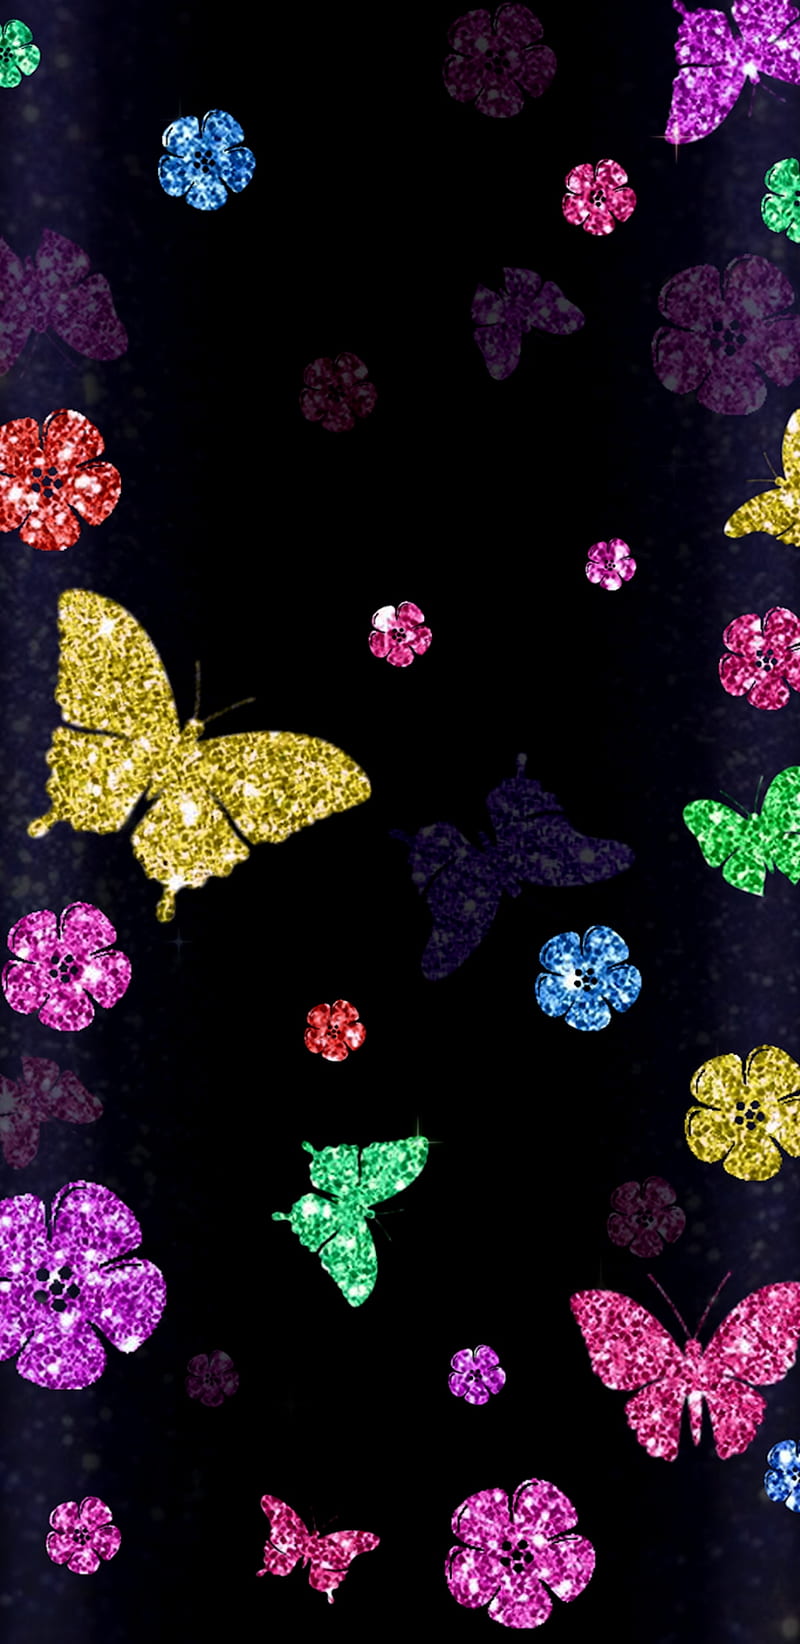 SparklingBeauty, bonito, beauty, butterflies, flowers, girly, glitter ...